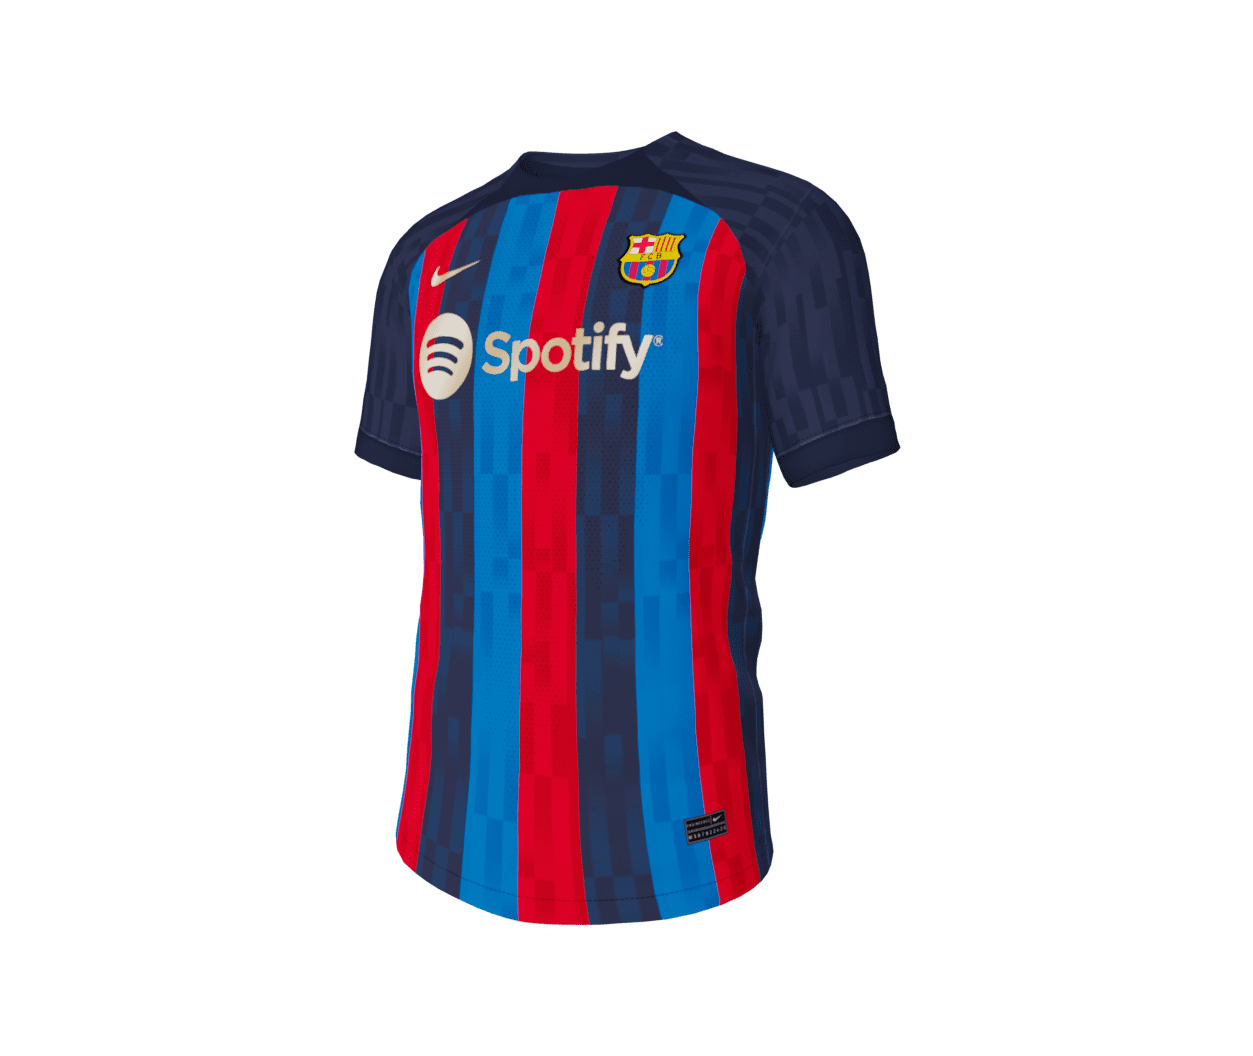 2022/23 Season Kits - by pol_designs